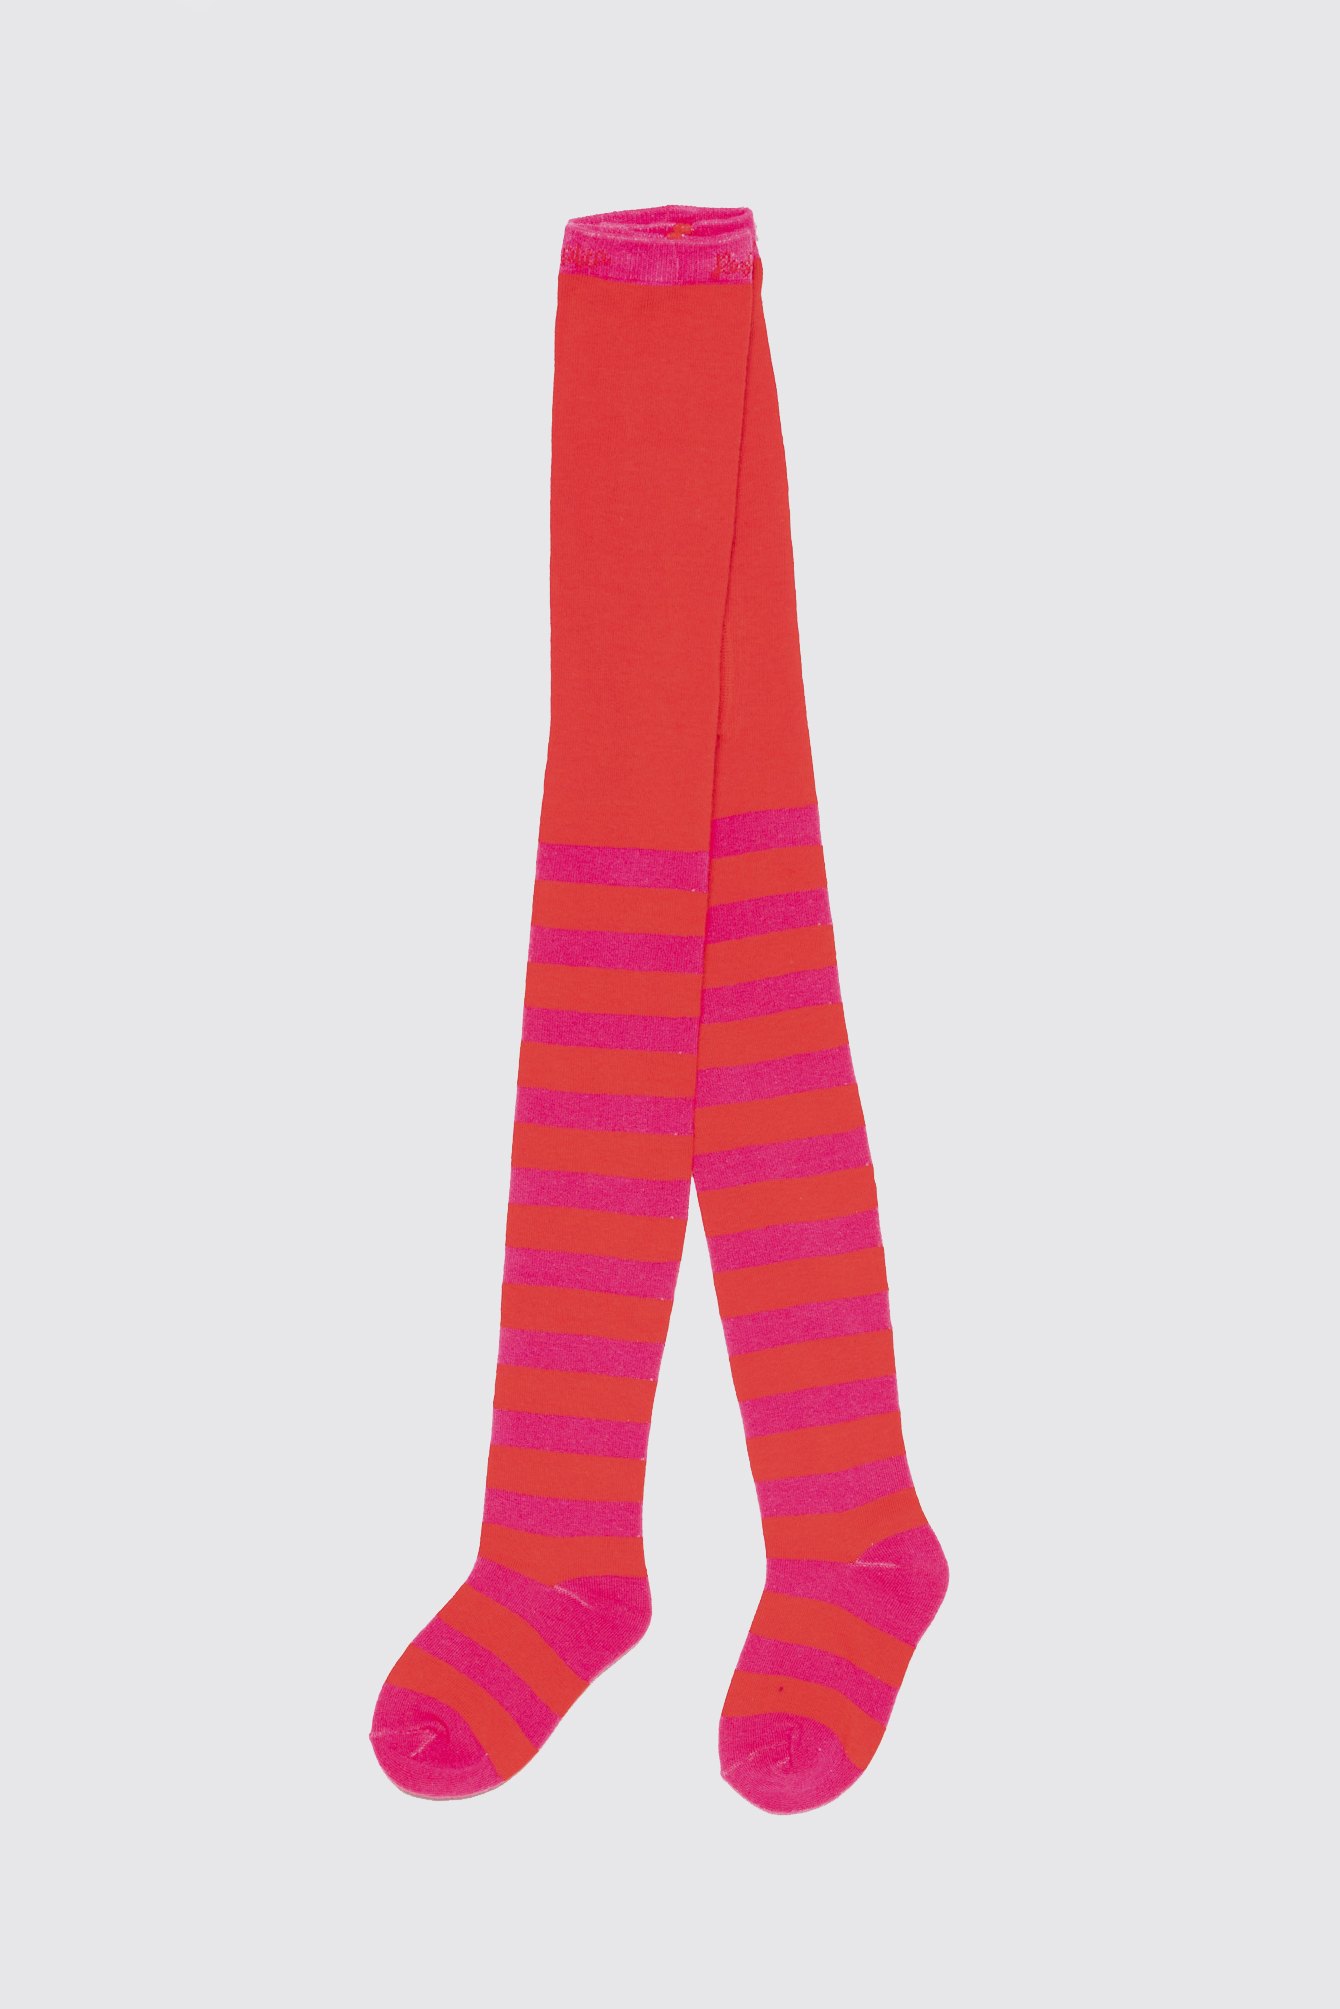 ROSALITA SENORITA Red & Pink Striped Tights - Poppydoll